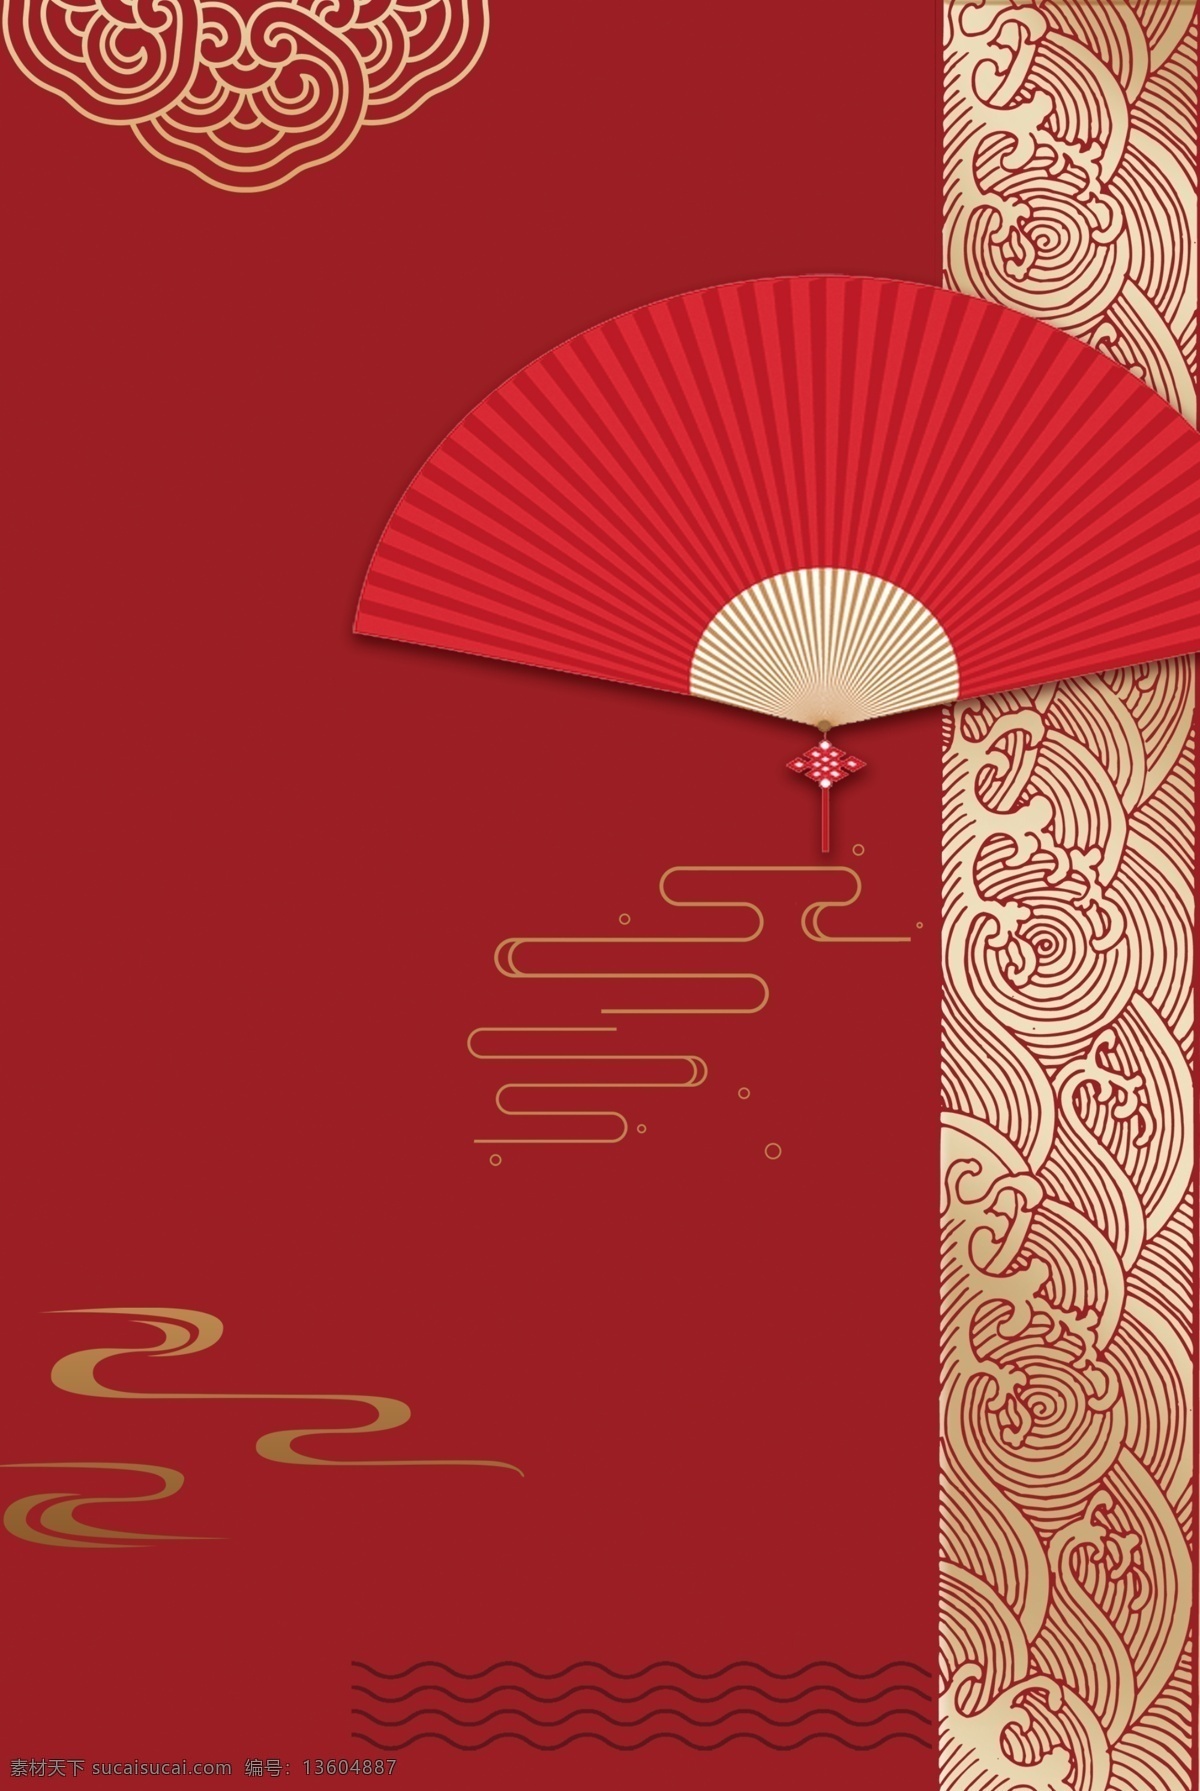 扇子 古风 红色 意境 复古 中国 风 背景 中国风 古风背景 分层 背景素材